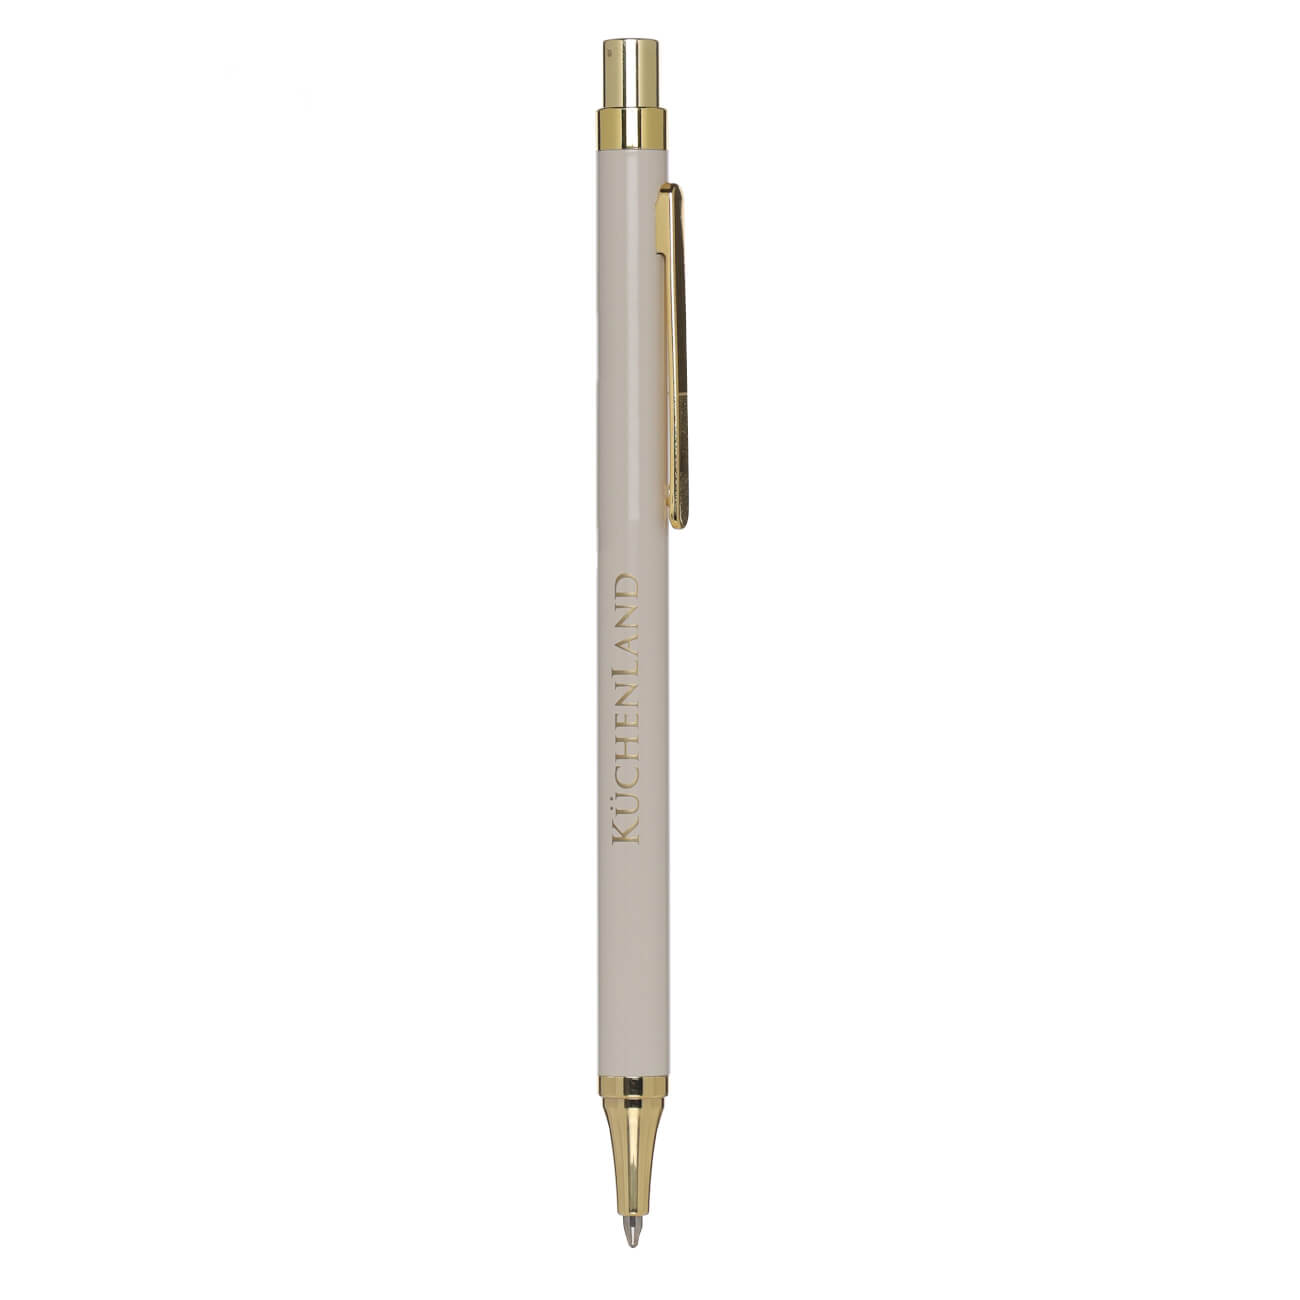 Ручка шариковая, 14 см, металл/пластик, бежевая, Eclipse ручка подарочная